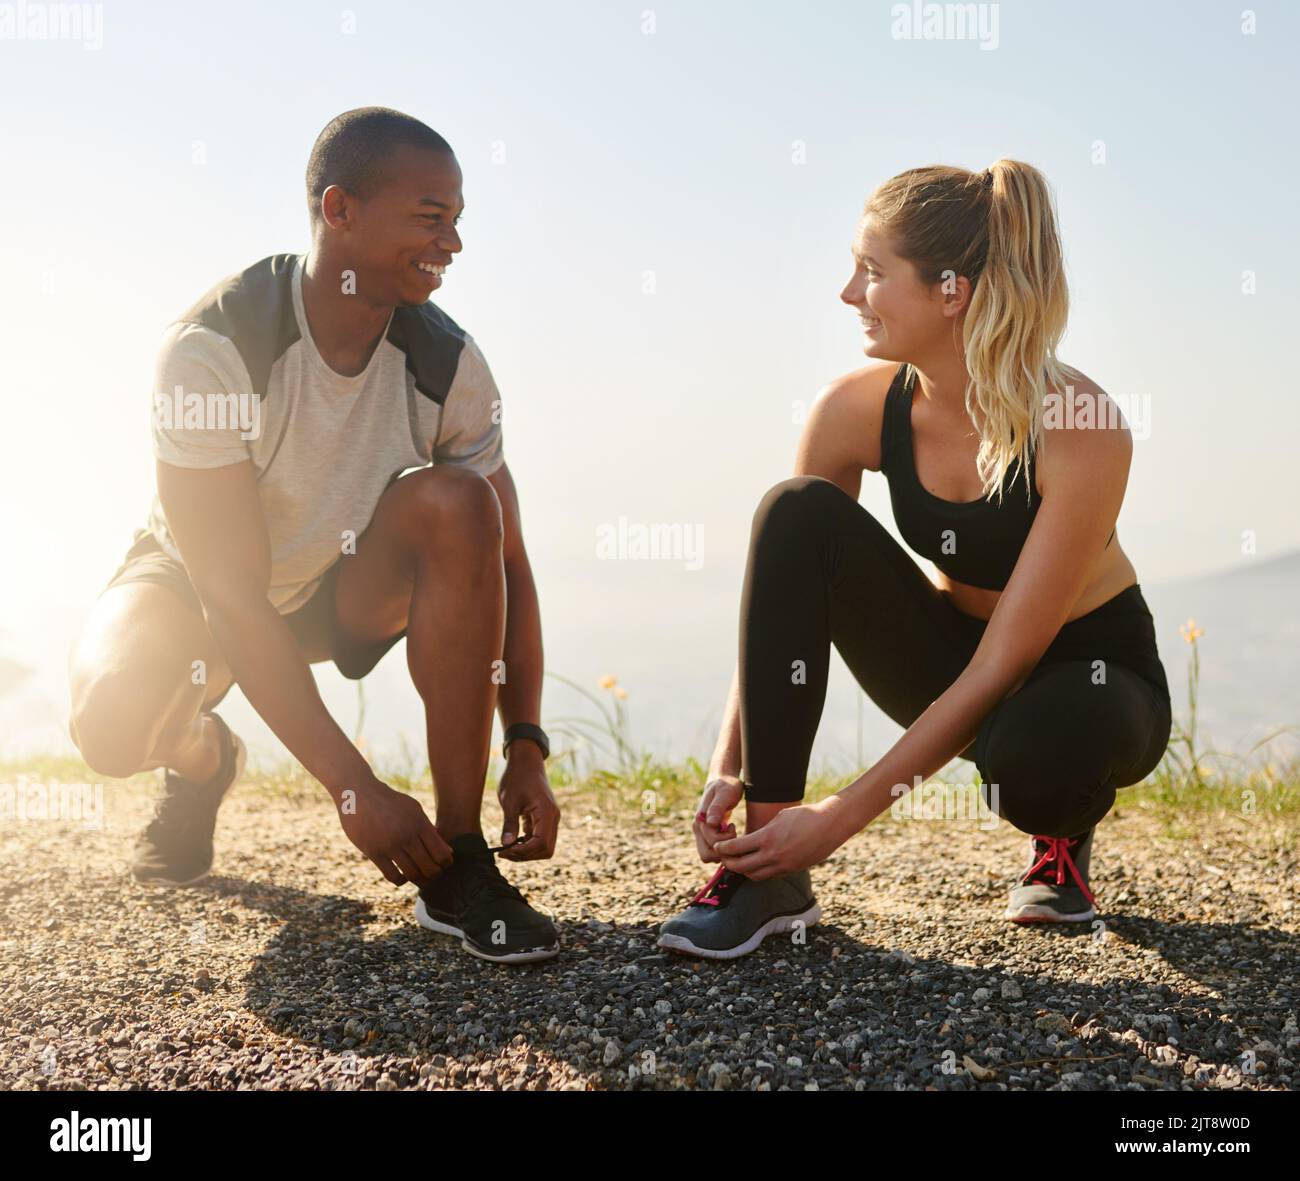 Ils partagent les mêmes objectifs de forme physique. Un jeune couple en forme de femme nouant leurs lacets avant une course à l'extérieur. Banque D'Images